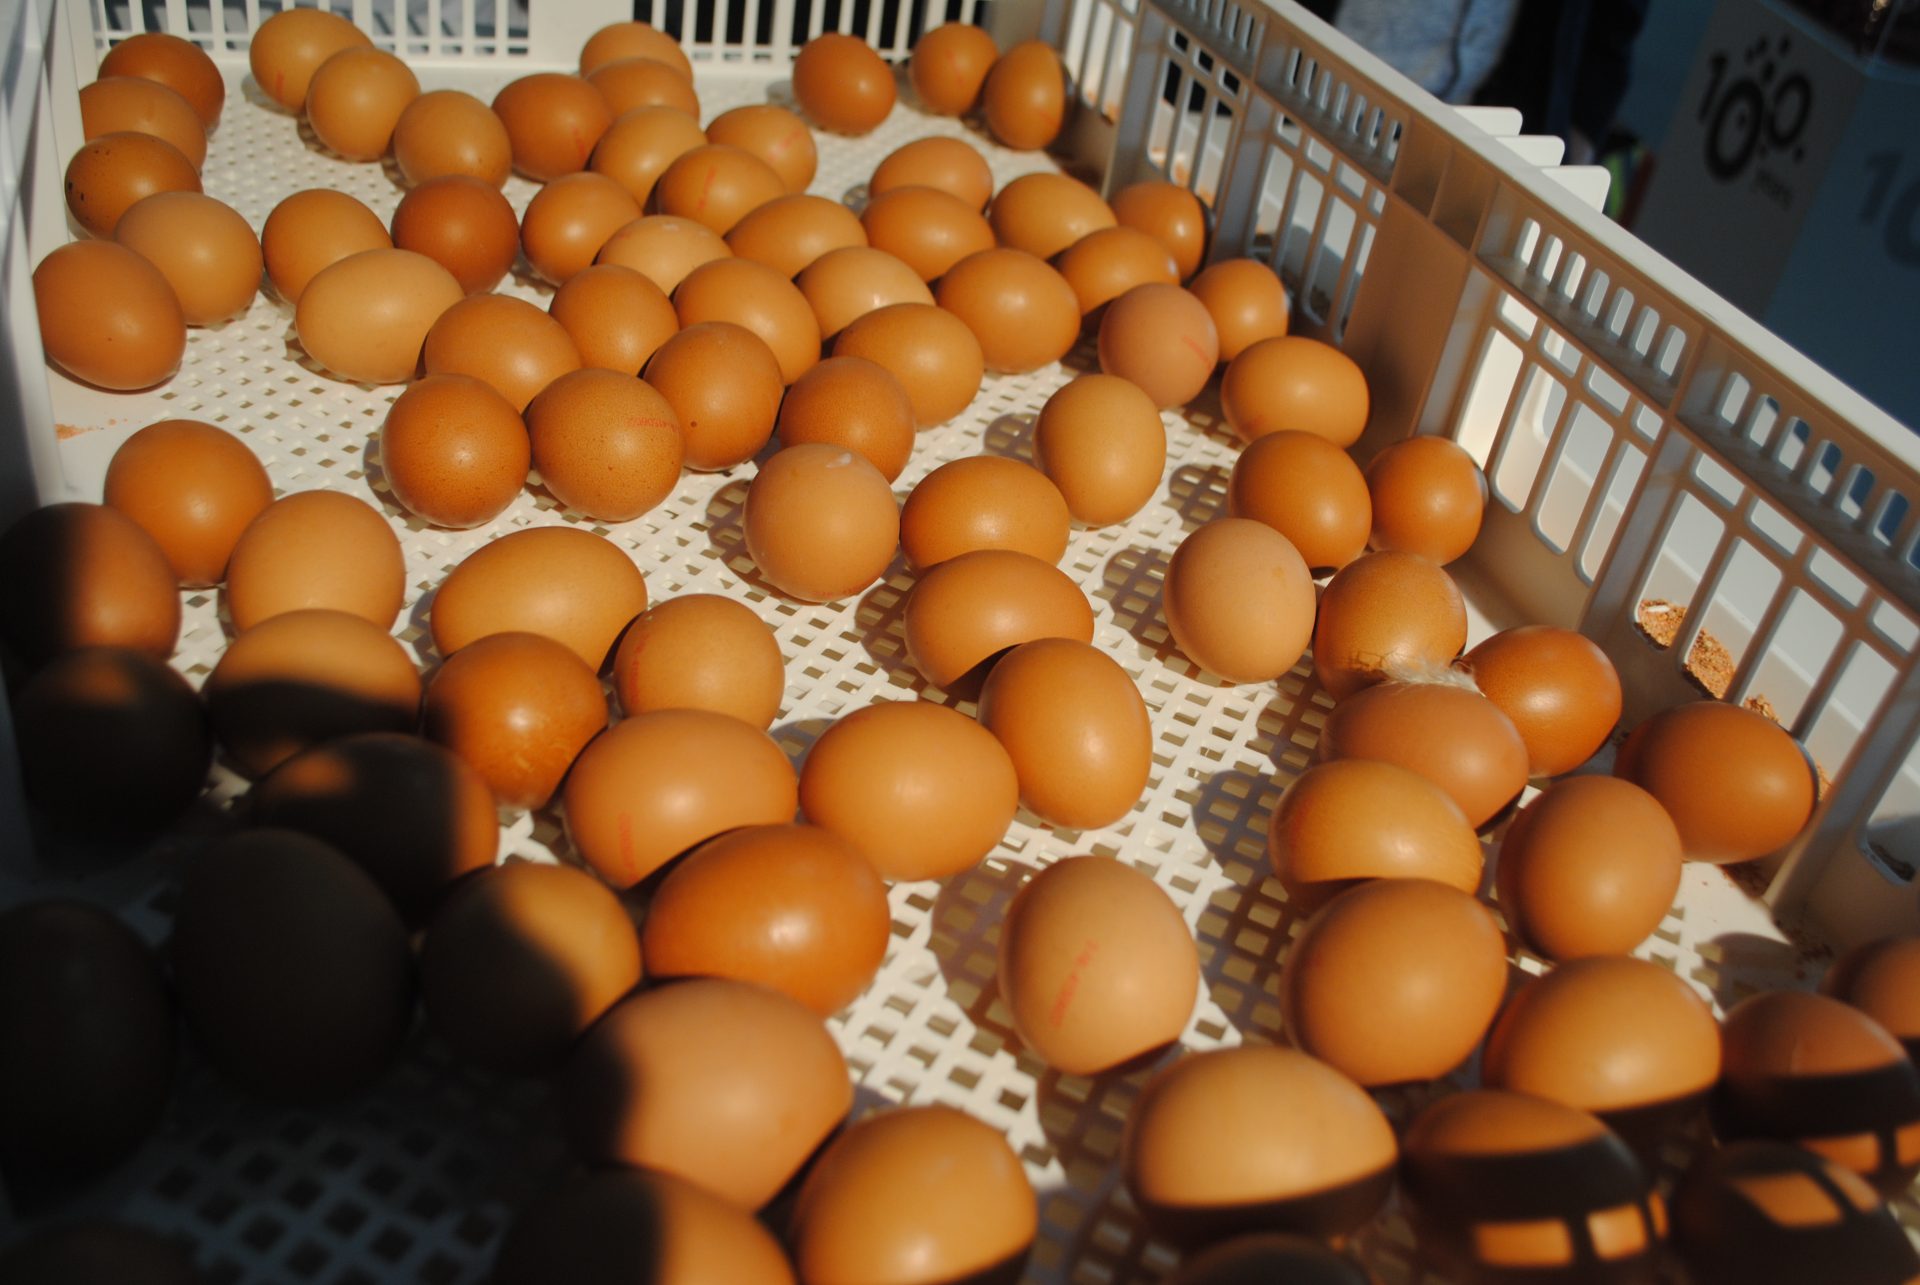 Nederlandse kippenboeren krijgen in beroep ongelijk in fipronilzaak